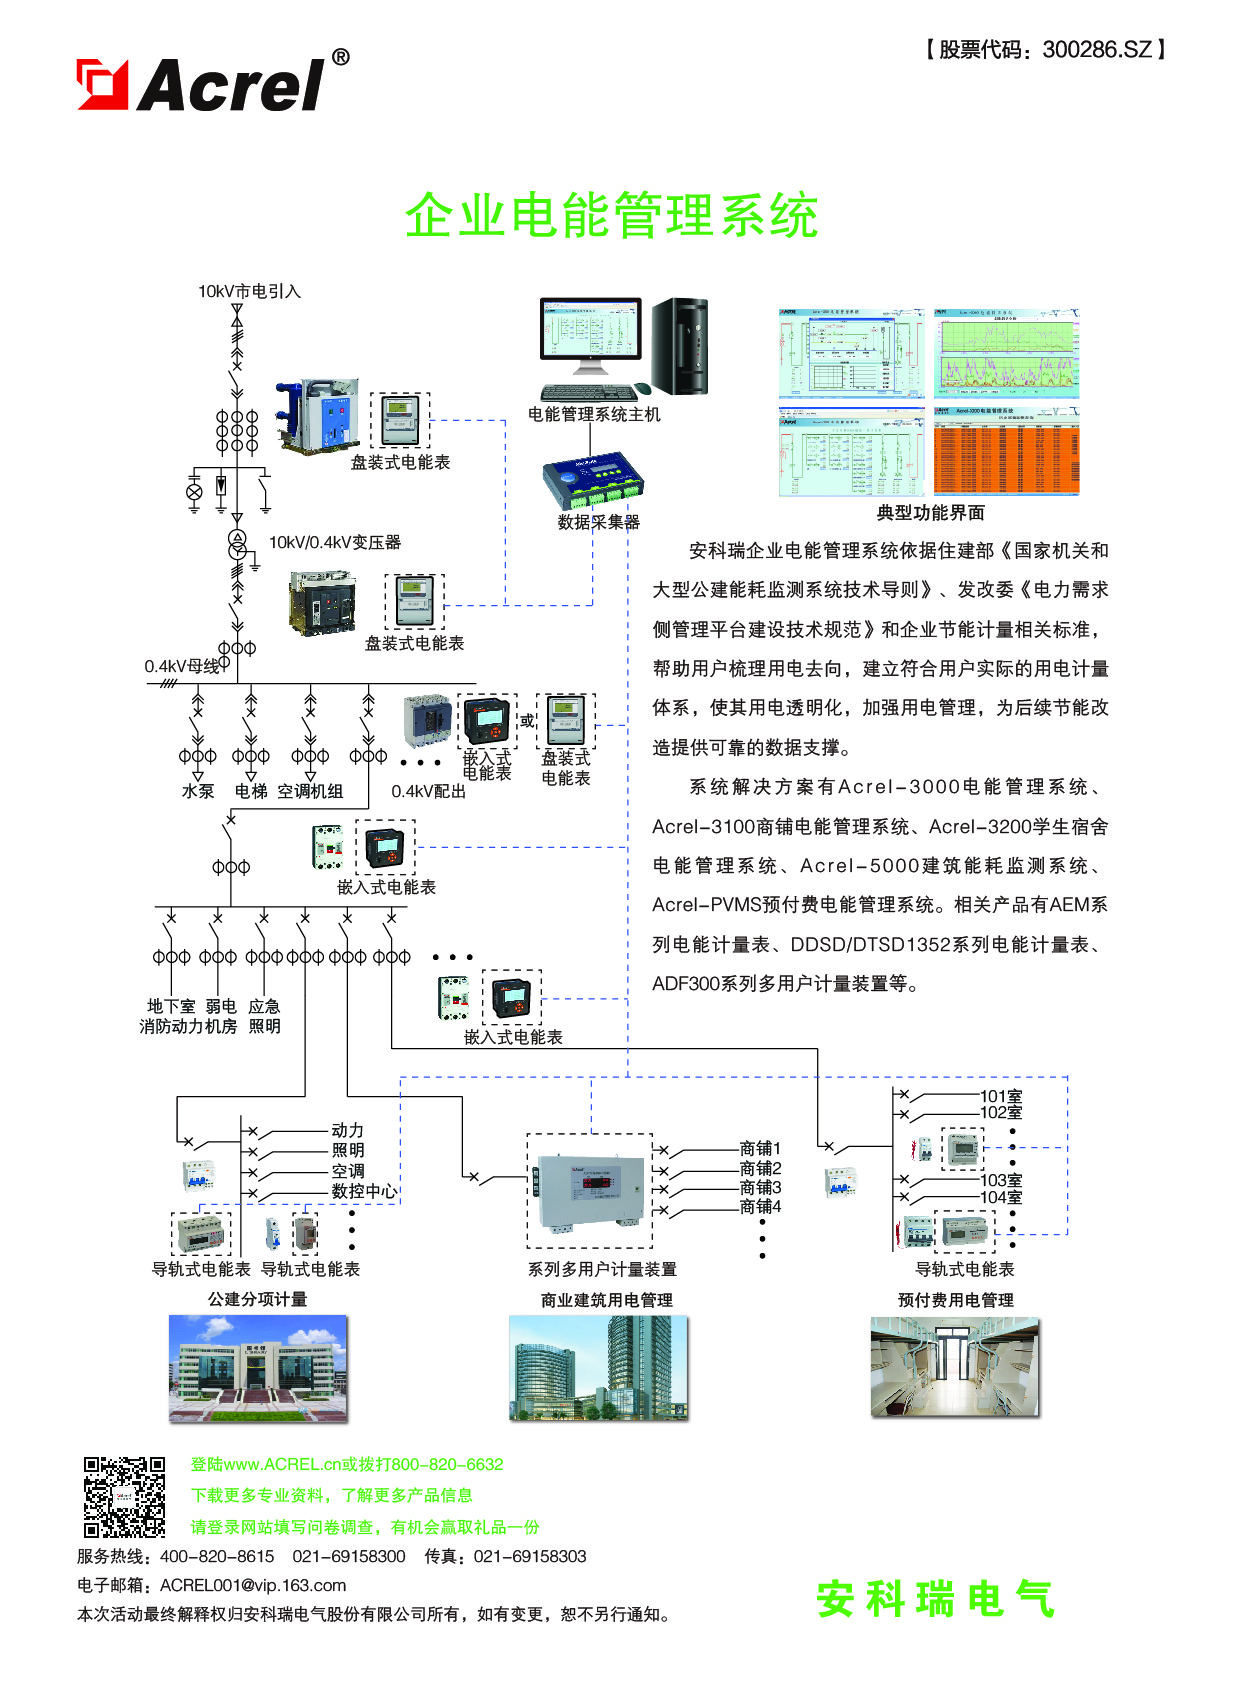 ACREL-3000电能管理系统在上海华大孵化中心项目中的应用—胡烨